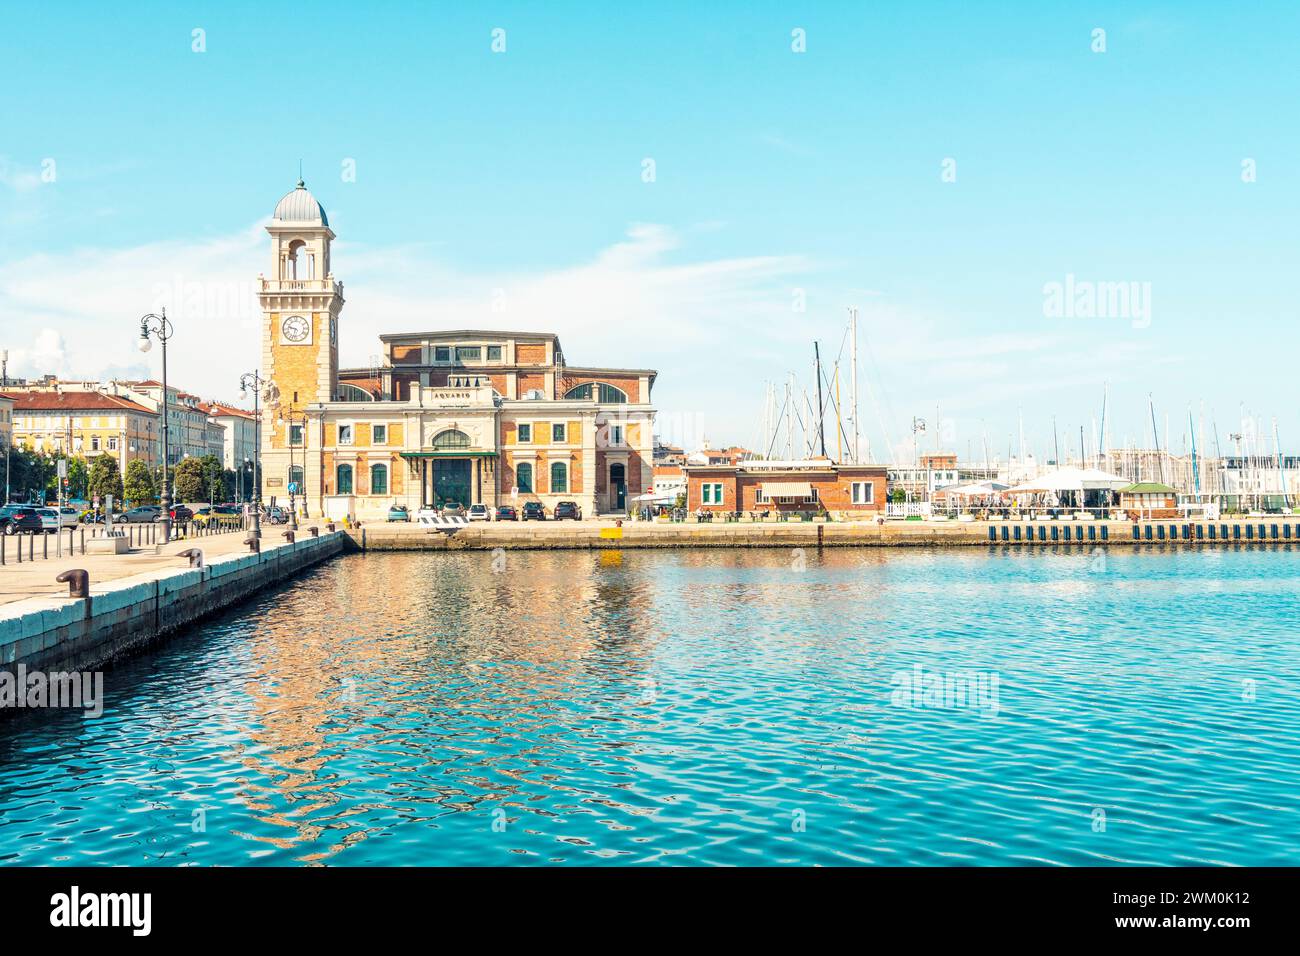 Italien, Friaul-Julisch Venetien, Triest, Küstenpromenade mit Veranstaltungsort Salone degli Incanti im Hintergrund Stockfoto